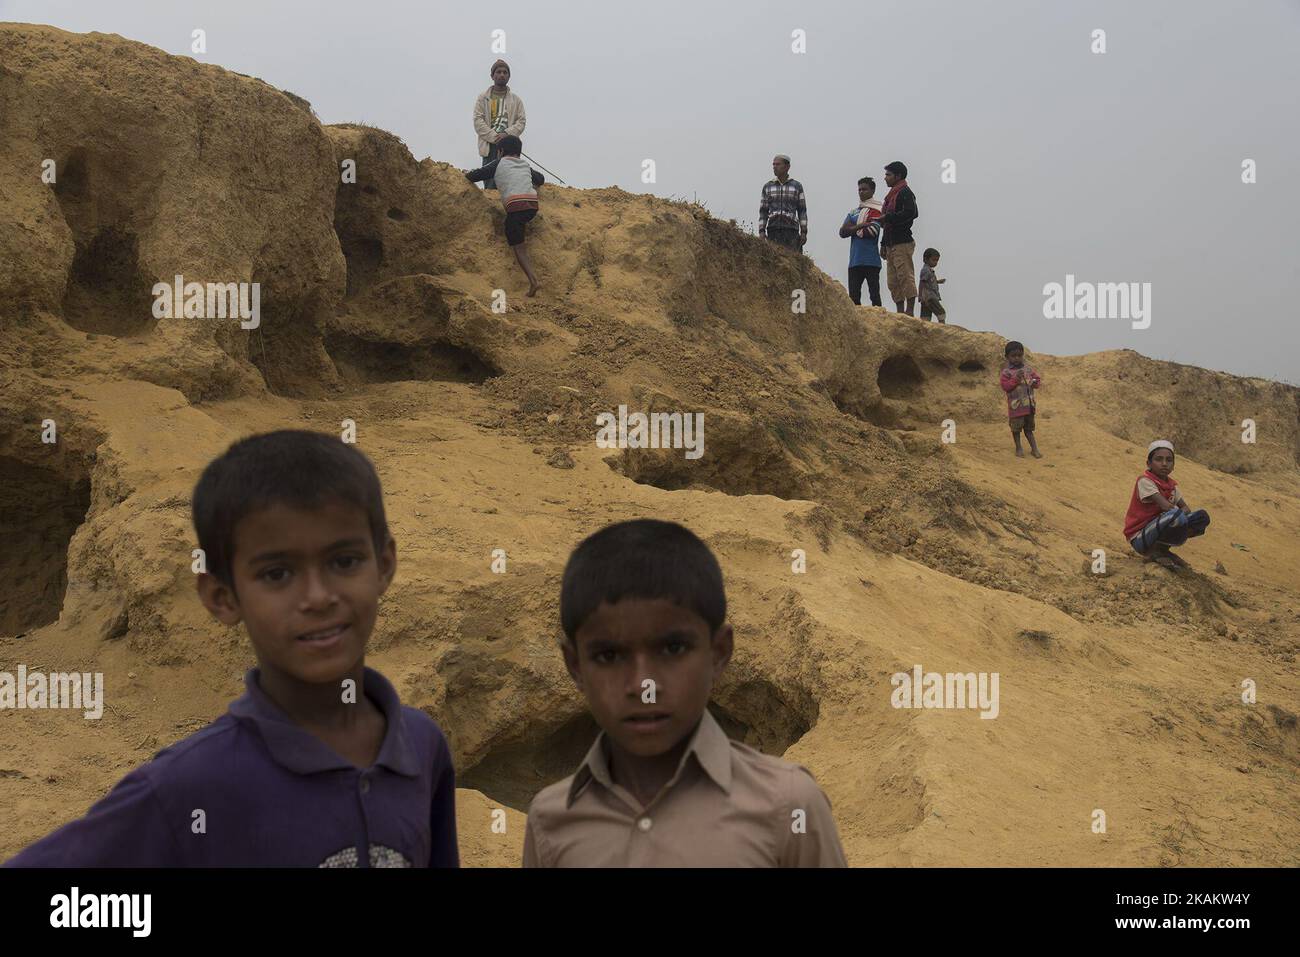 Angesichts der knappen Ausstattung im Flüchtlingslager bleibt sogar die Grundbildung ein weiter Traum. Die Kinder der Rohingya-Gemeinschaft sind damit auf dem Weg in eine ungewisse Zukunft. Kutupalong, Bangladesch, 21.02.17 . Die muslimischen Rohingya-Flüchtlinge aus Bangladesch sind ursprünglich Bewohner der Provinz Arakan in Myanmar. Als jedoch die Staatsbürgerschaft von Myanmar im Jahr 1990s verweigert wurde und die Folter durch militärische und buddhistische extremistische Kräfte zunahm, wurde die Gemeinschaft gezwungen, in die provisorischen Lager von Bangladesch Zuflucht zu nehmen. Mehr als eine Million Rohingyas leben heute ohne Grundausstattung in der Regierung c Stockfoto